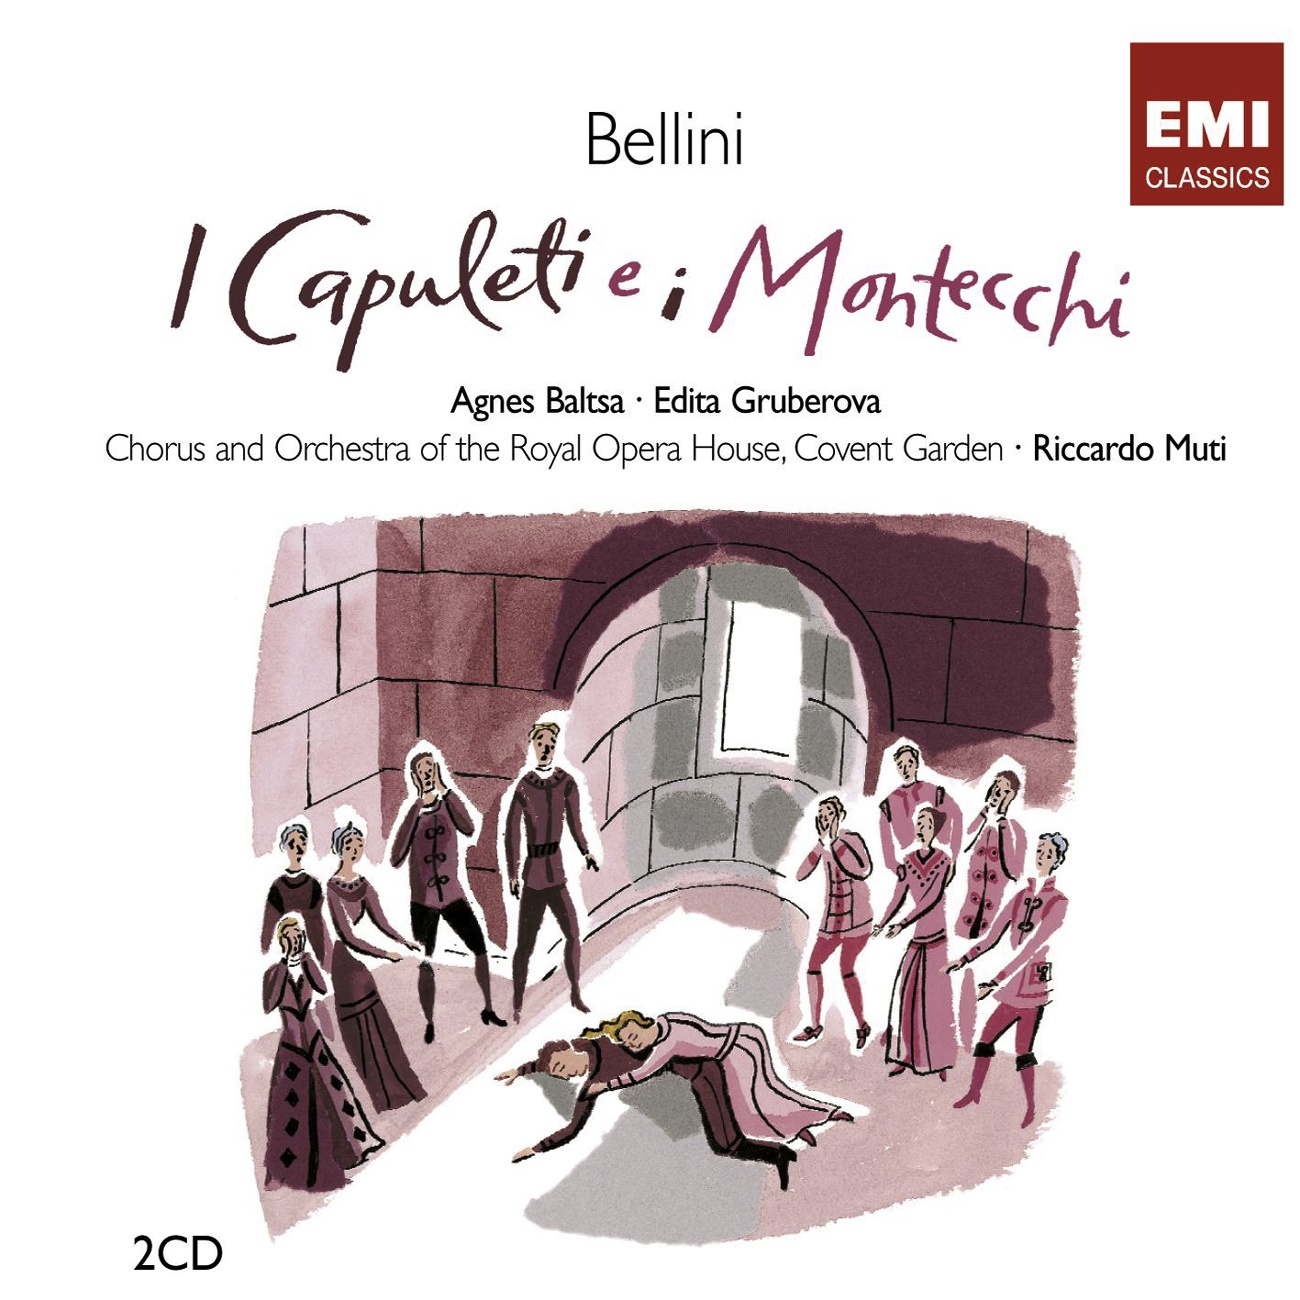 I Capuleti e i Montecchi, ATTO PRIMA Scena 3: Soccorso, sostegno accordagli (Tebaldo/Lorenzo/Giulietta/Romeo/Capellio)